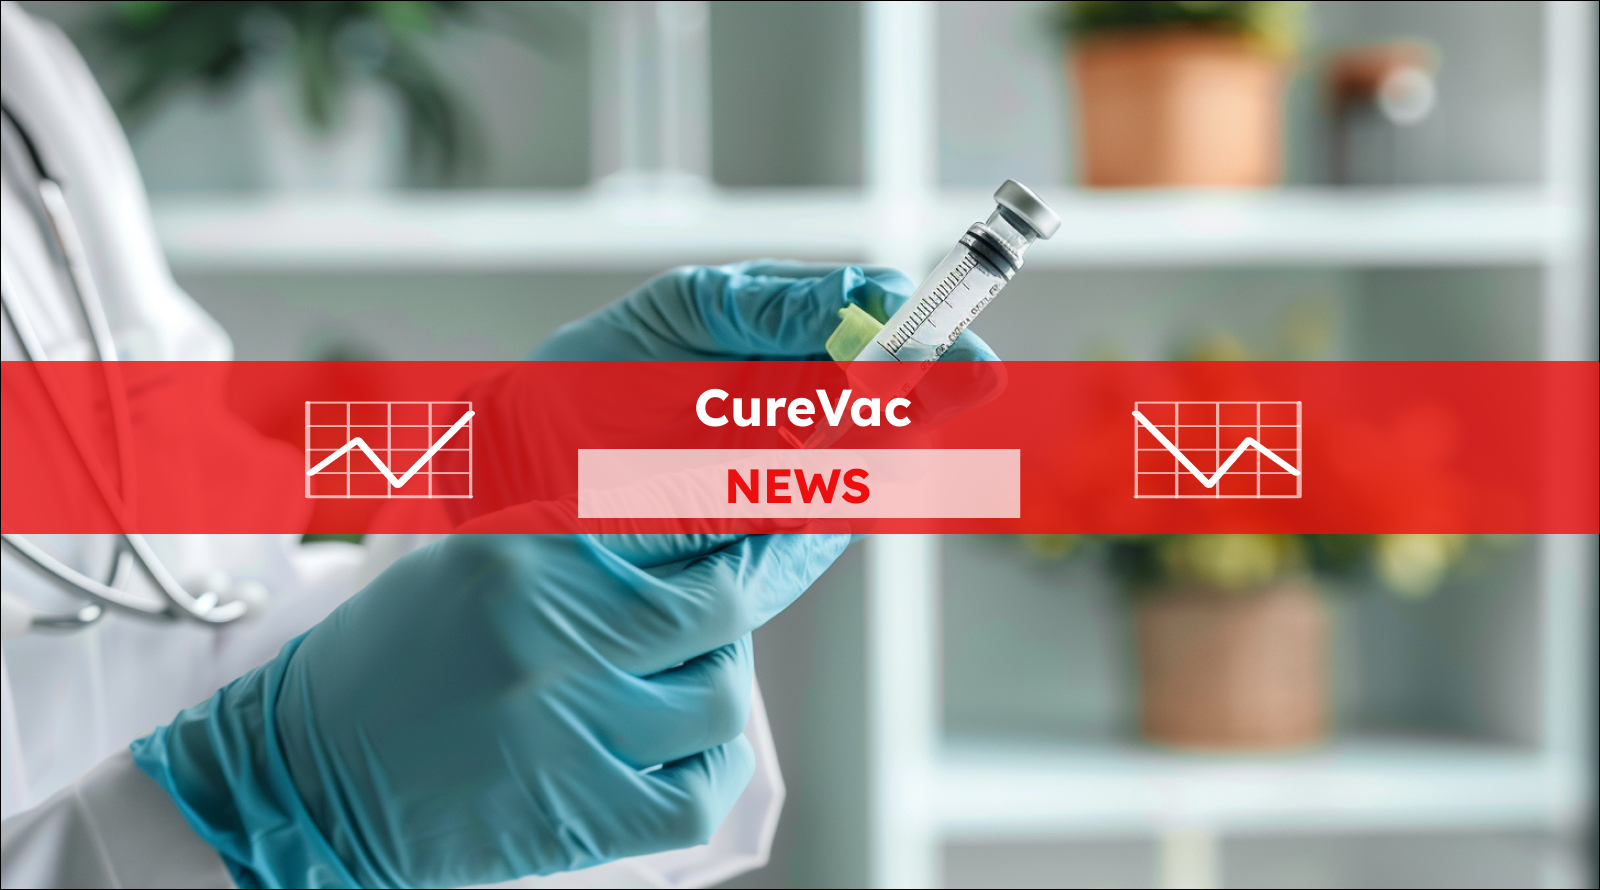 Ein Impfstoff in der Hand, mit einem CureVac NEWS Banner